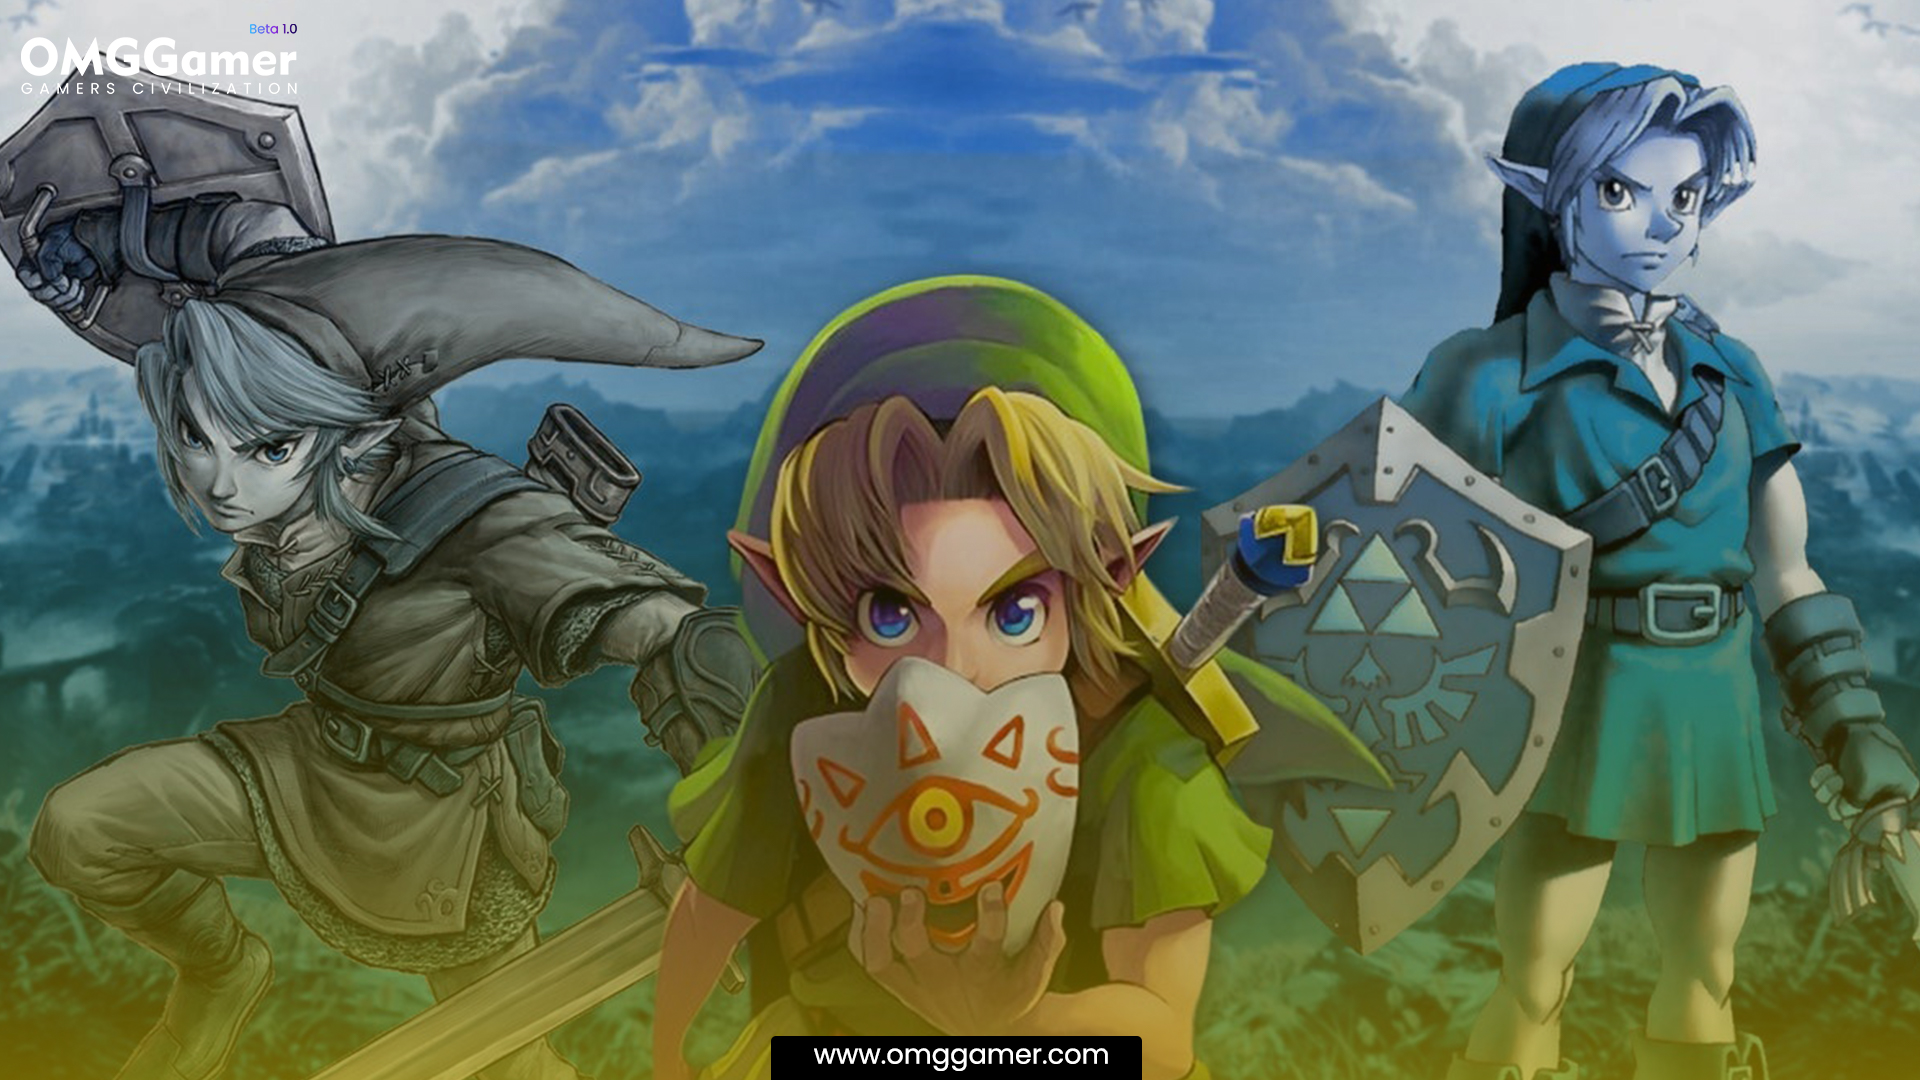 The Adventure of Link: The Legend Zelda Games in Order